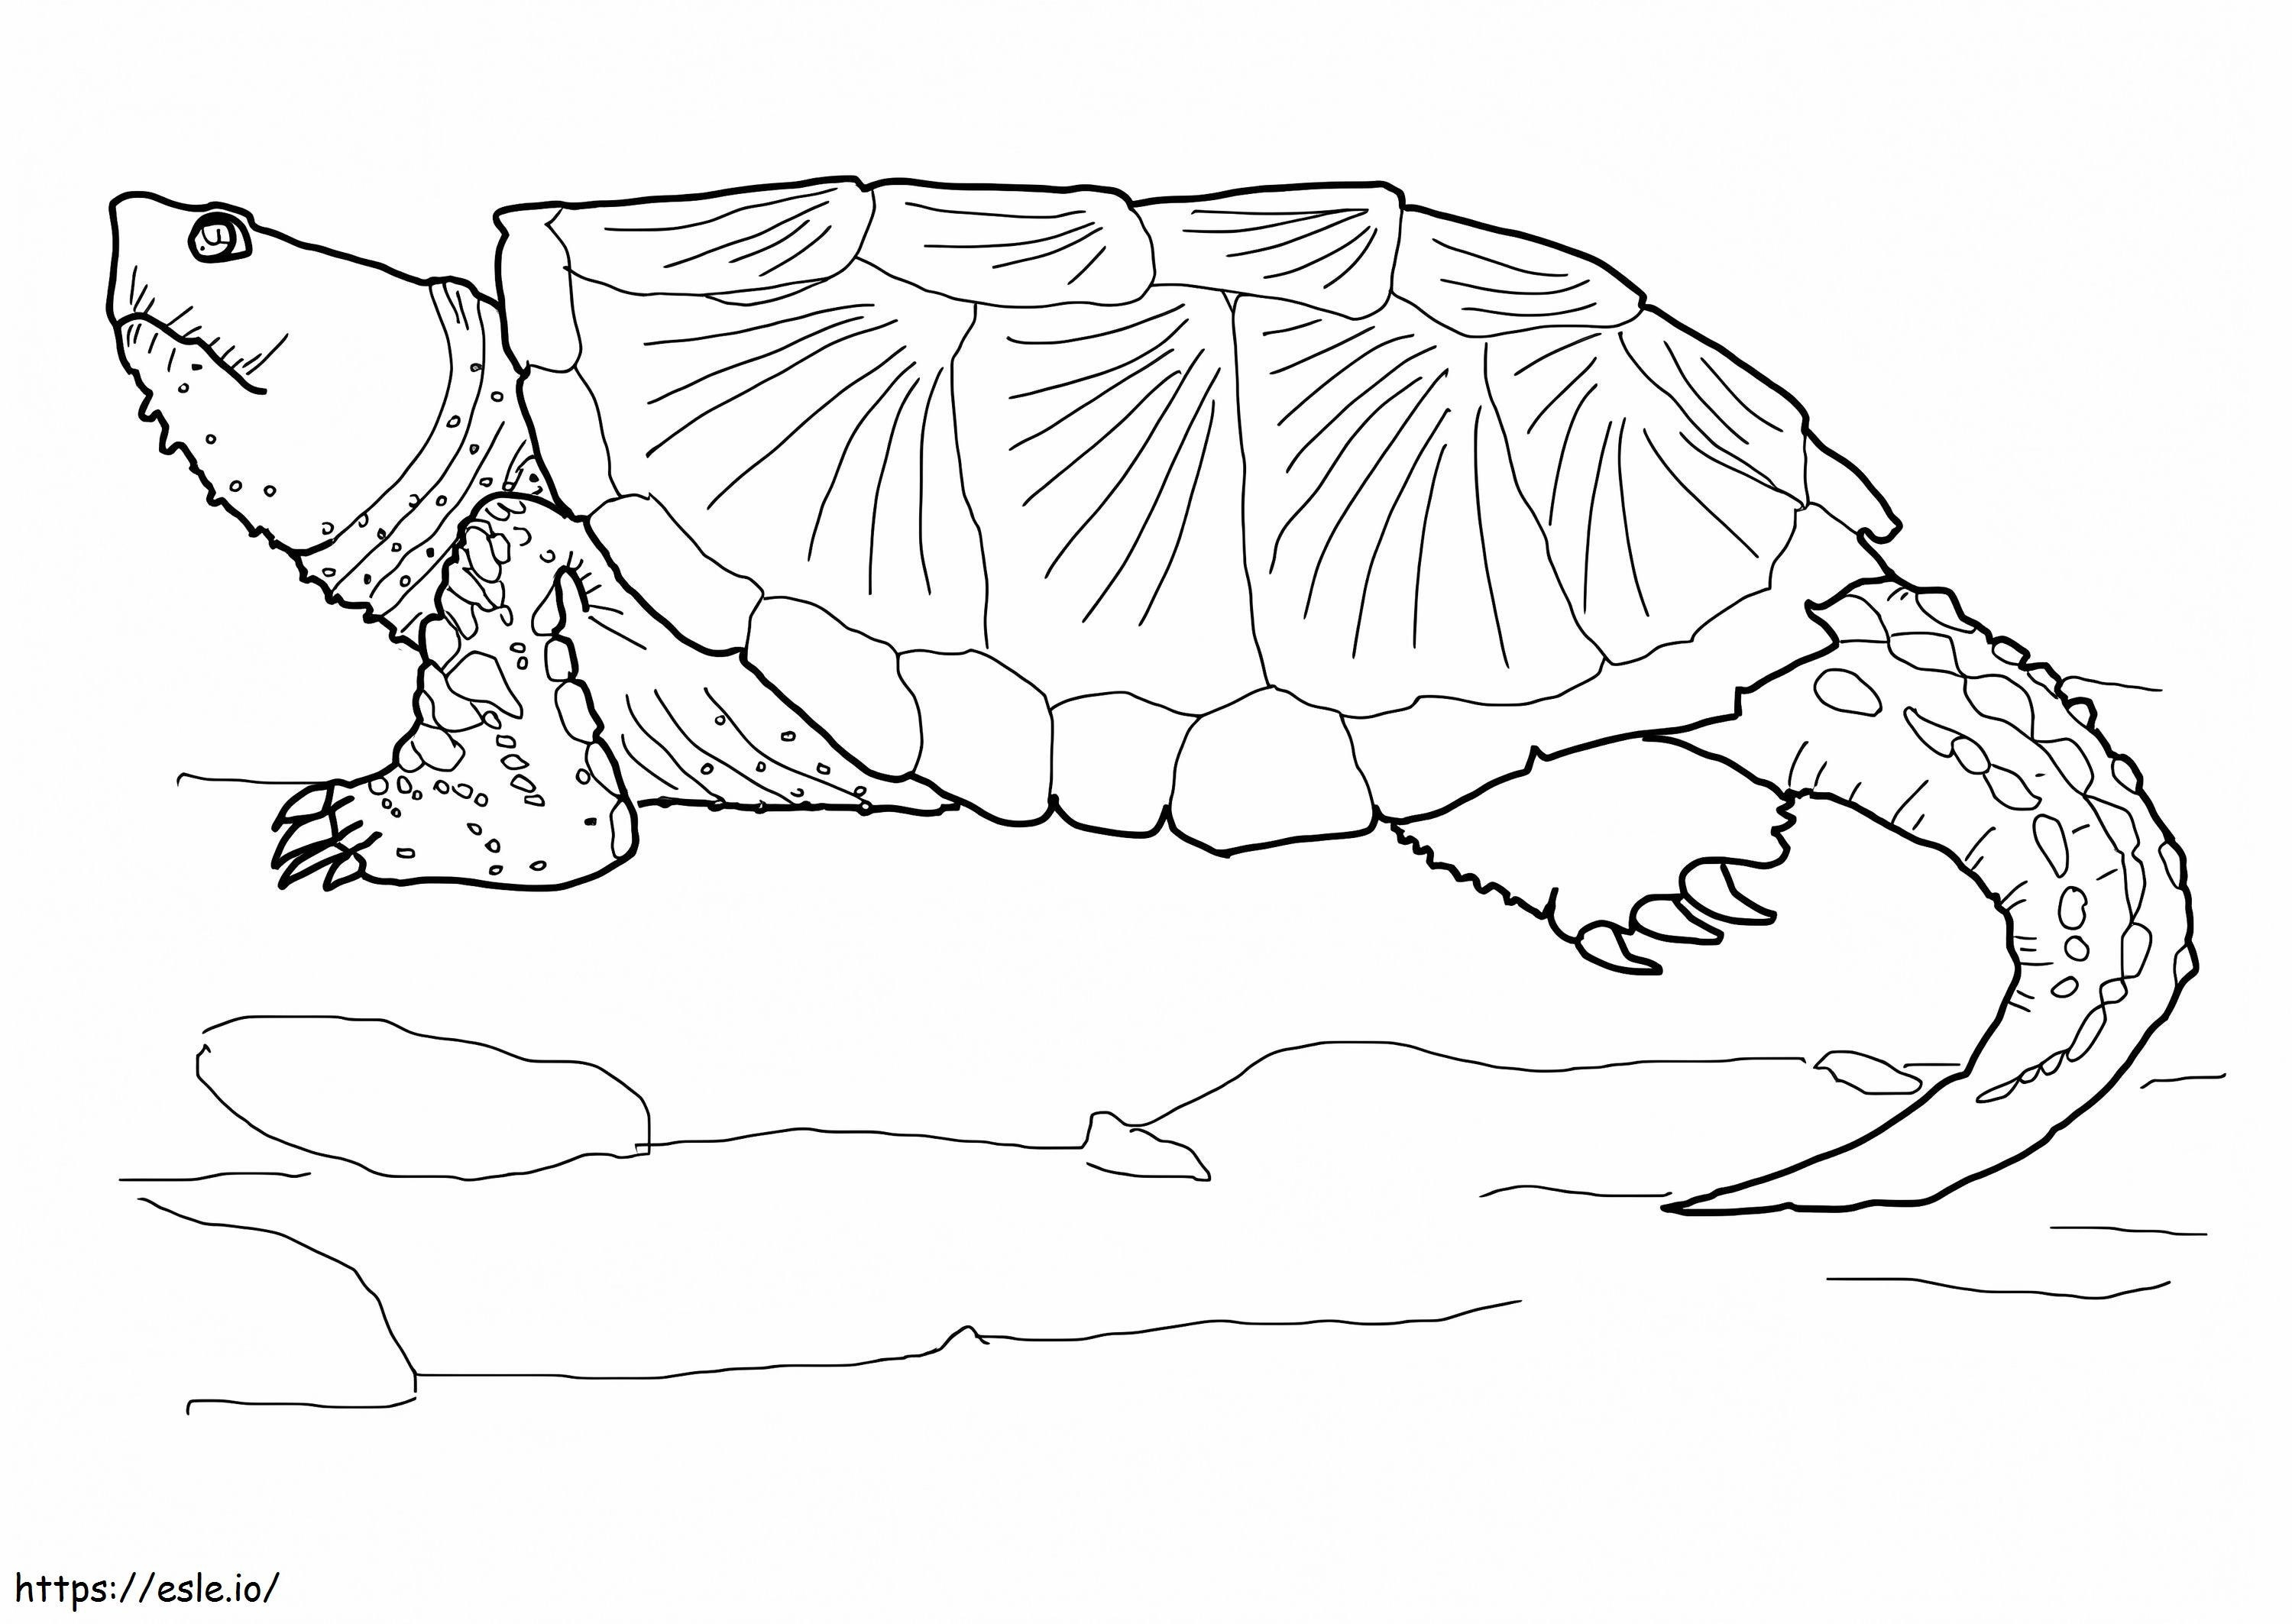 Gewöhnliche Schnappschildkröte 1 ausmalbilder